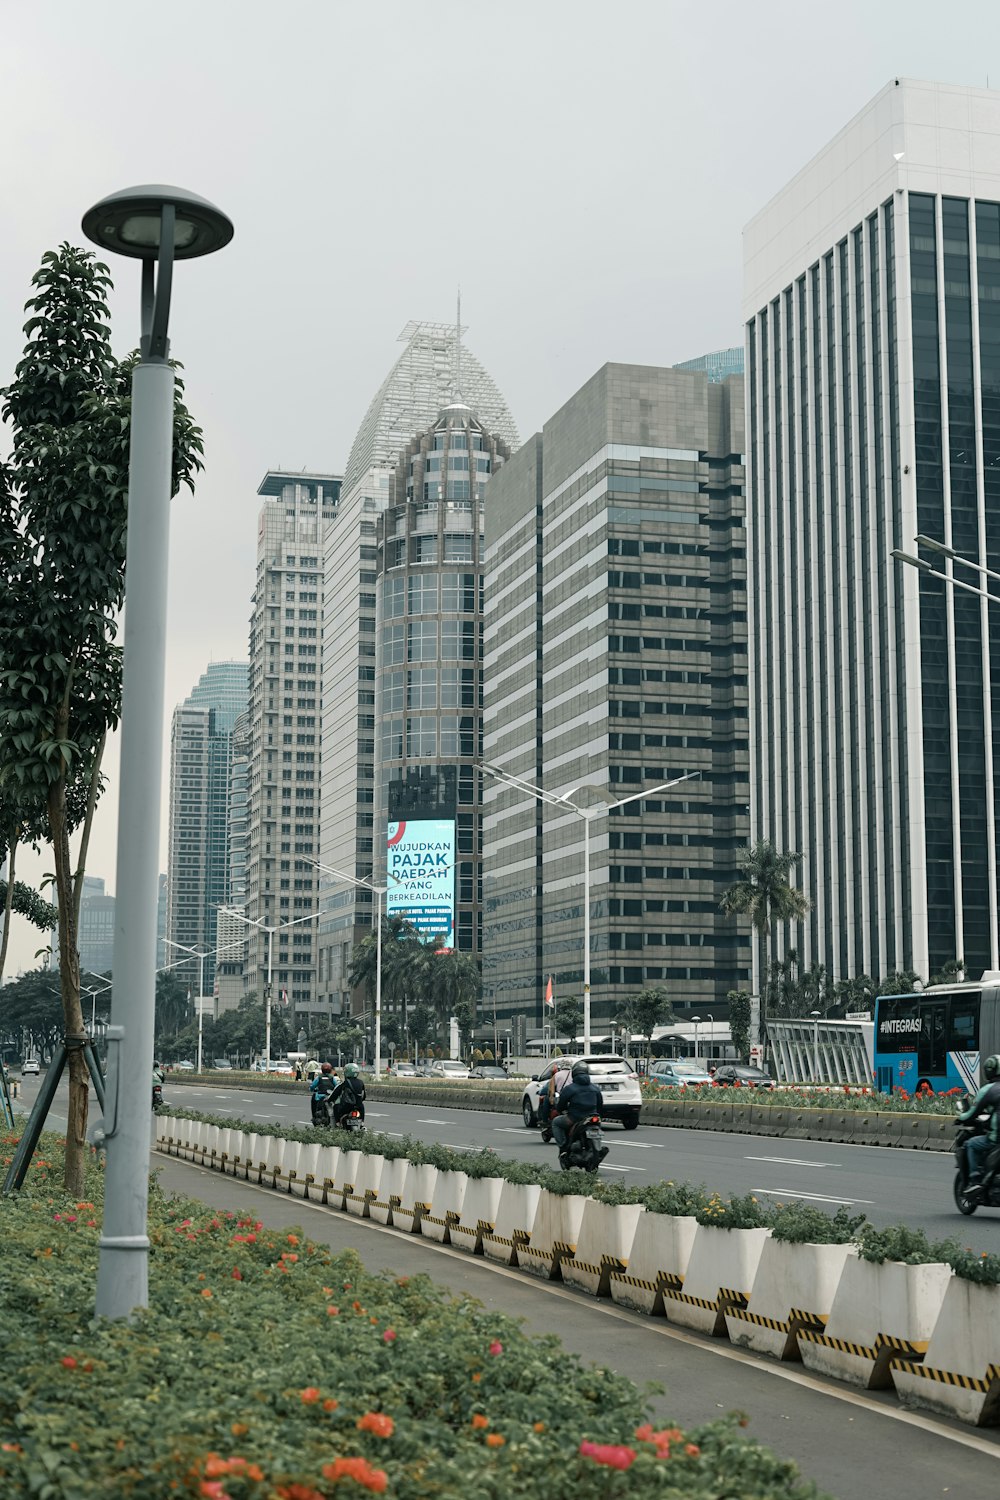 Eine belebte Stadtstraße mit hohen Gebäuden im Hintergrund